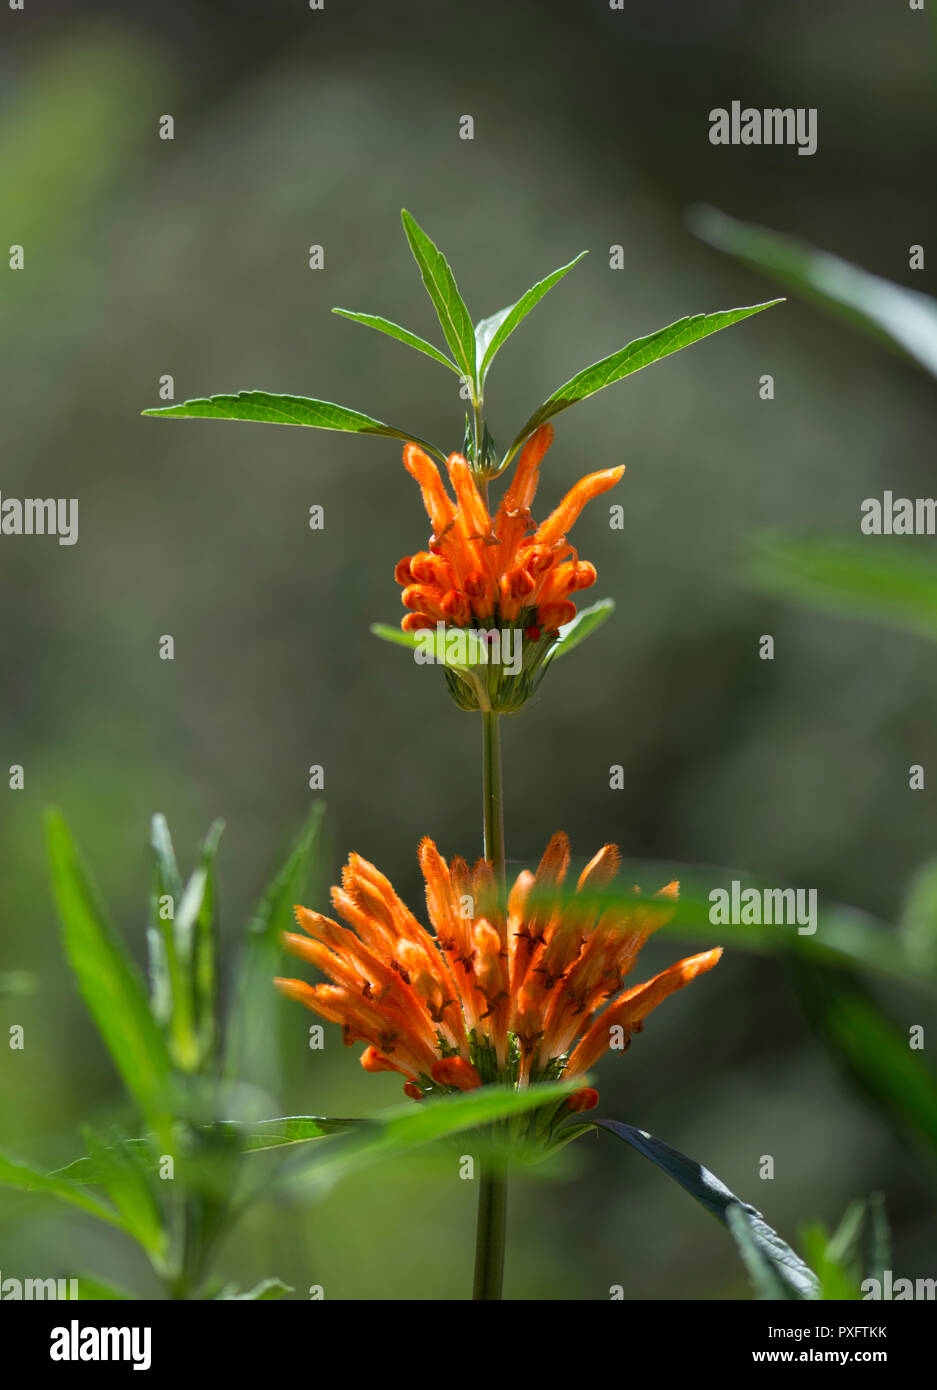 Strange flowers immagini e fotografie stock ad alta risoluzione - Alamy